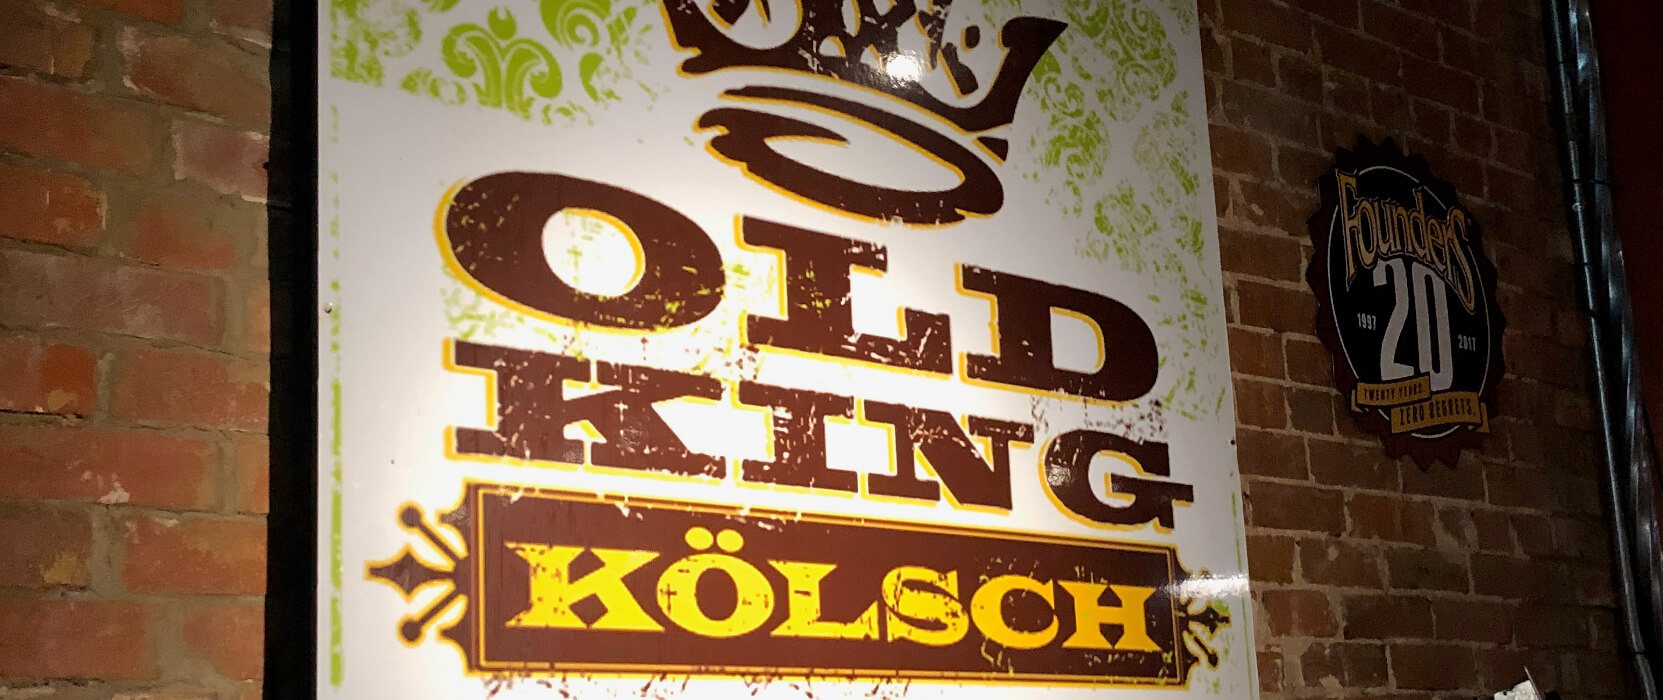 Old King Kölsch | Bricktown Brewery, Oklahoma City, Oklahoma, USA